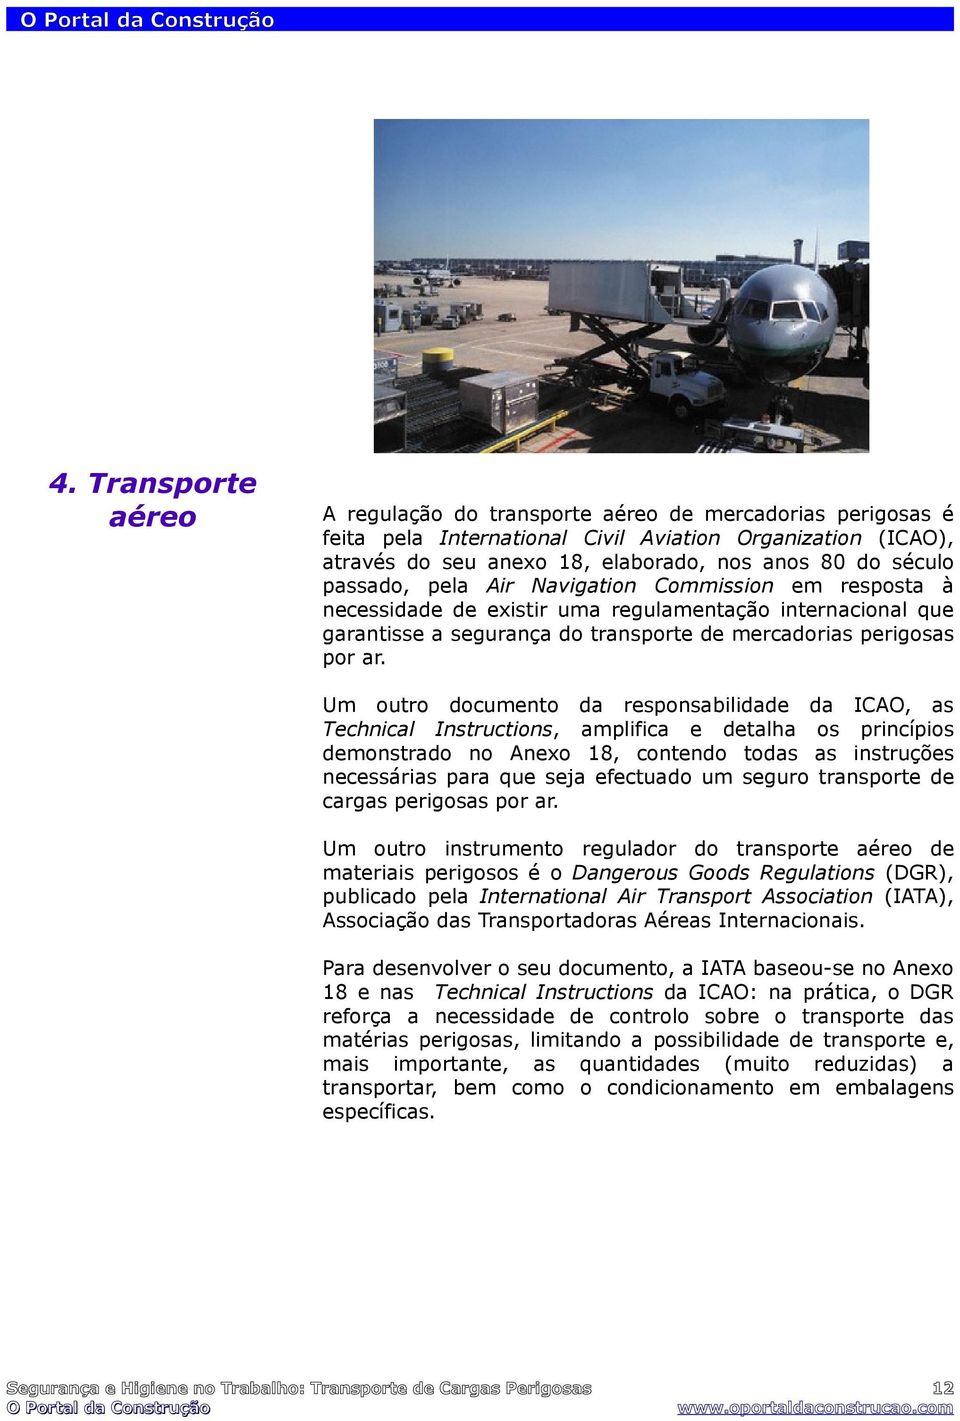 Um outro documento da responsabilidade da ICAO, as Technical Instructions, amplifica e detalha os princípios demonstrado no Anexo 18, contendo todas as instruções necessárias para que seja efectuado